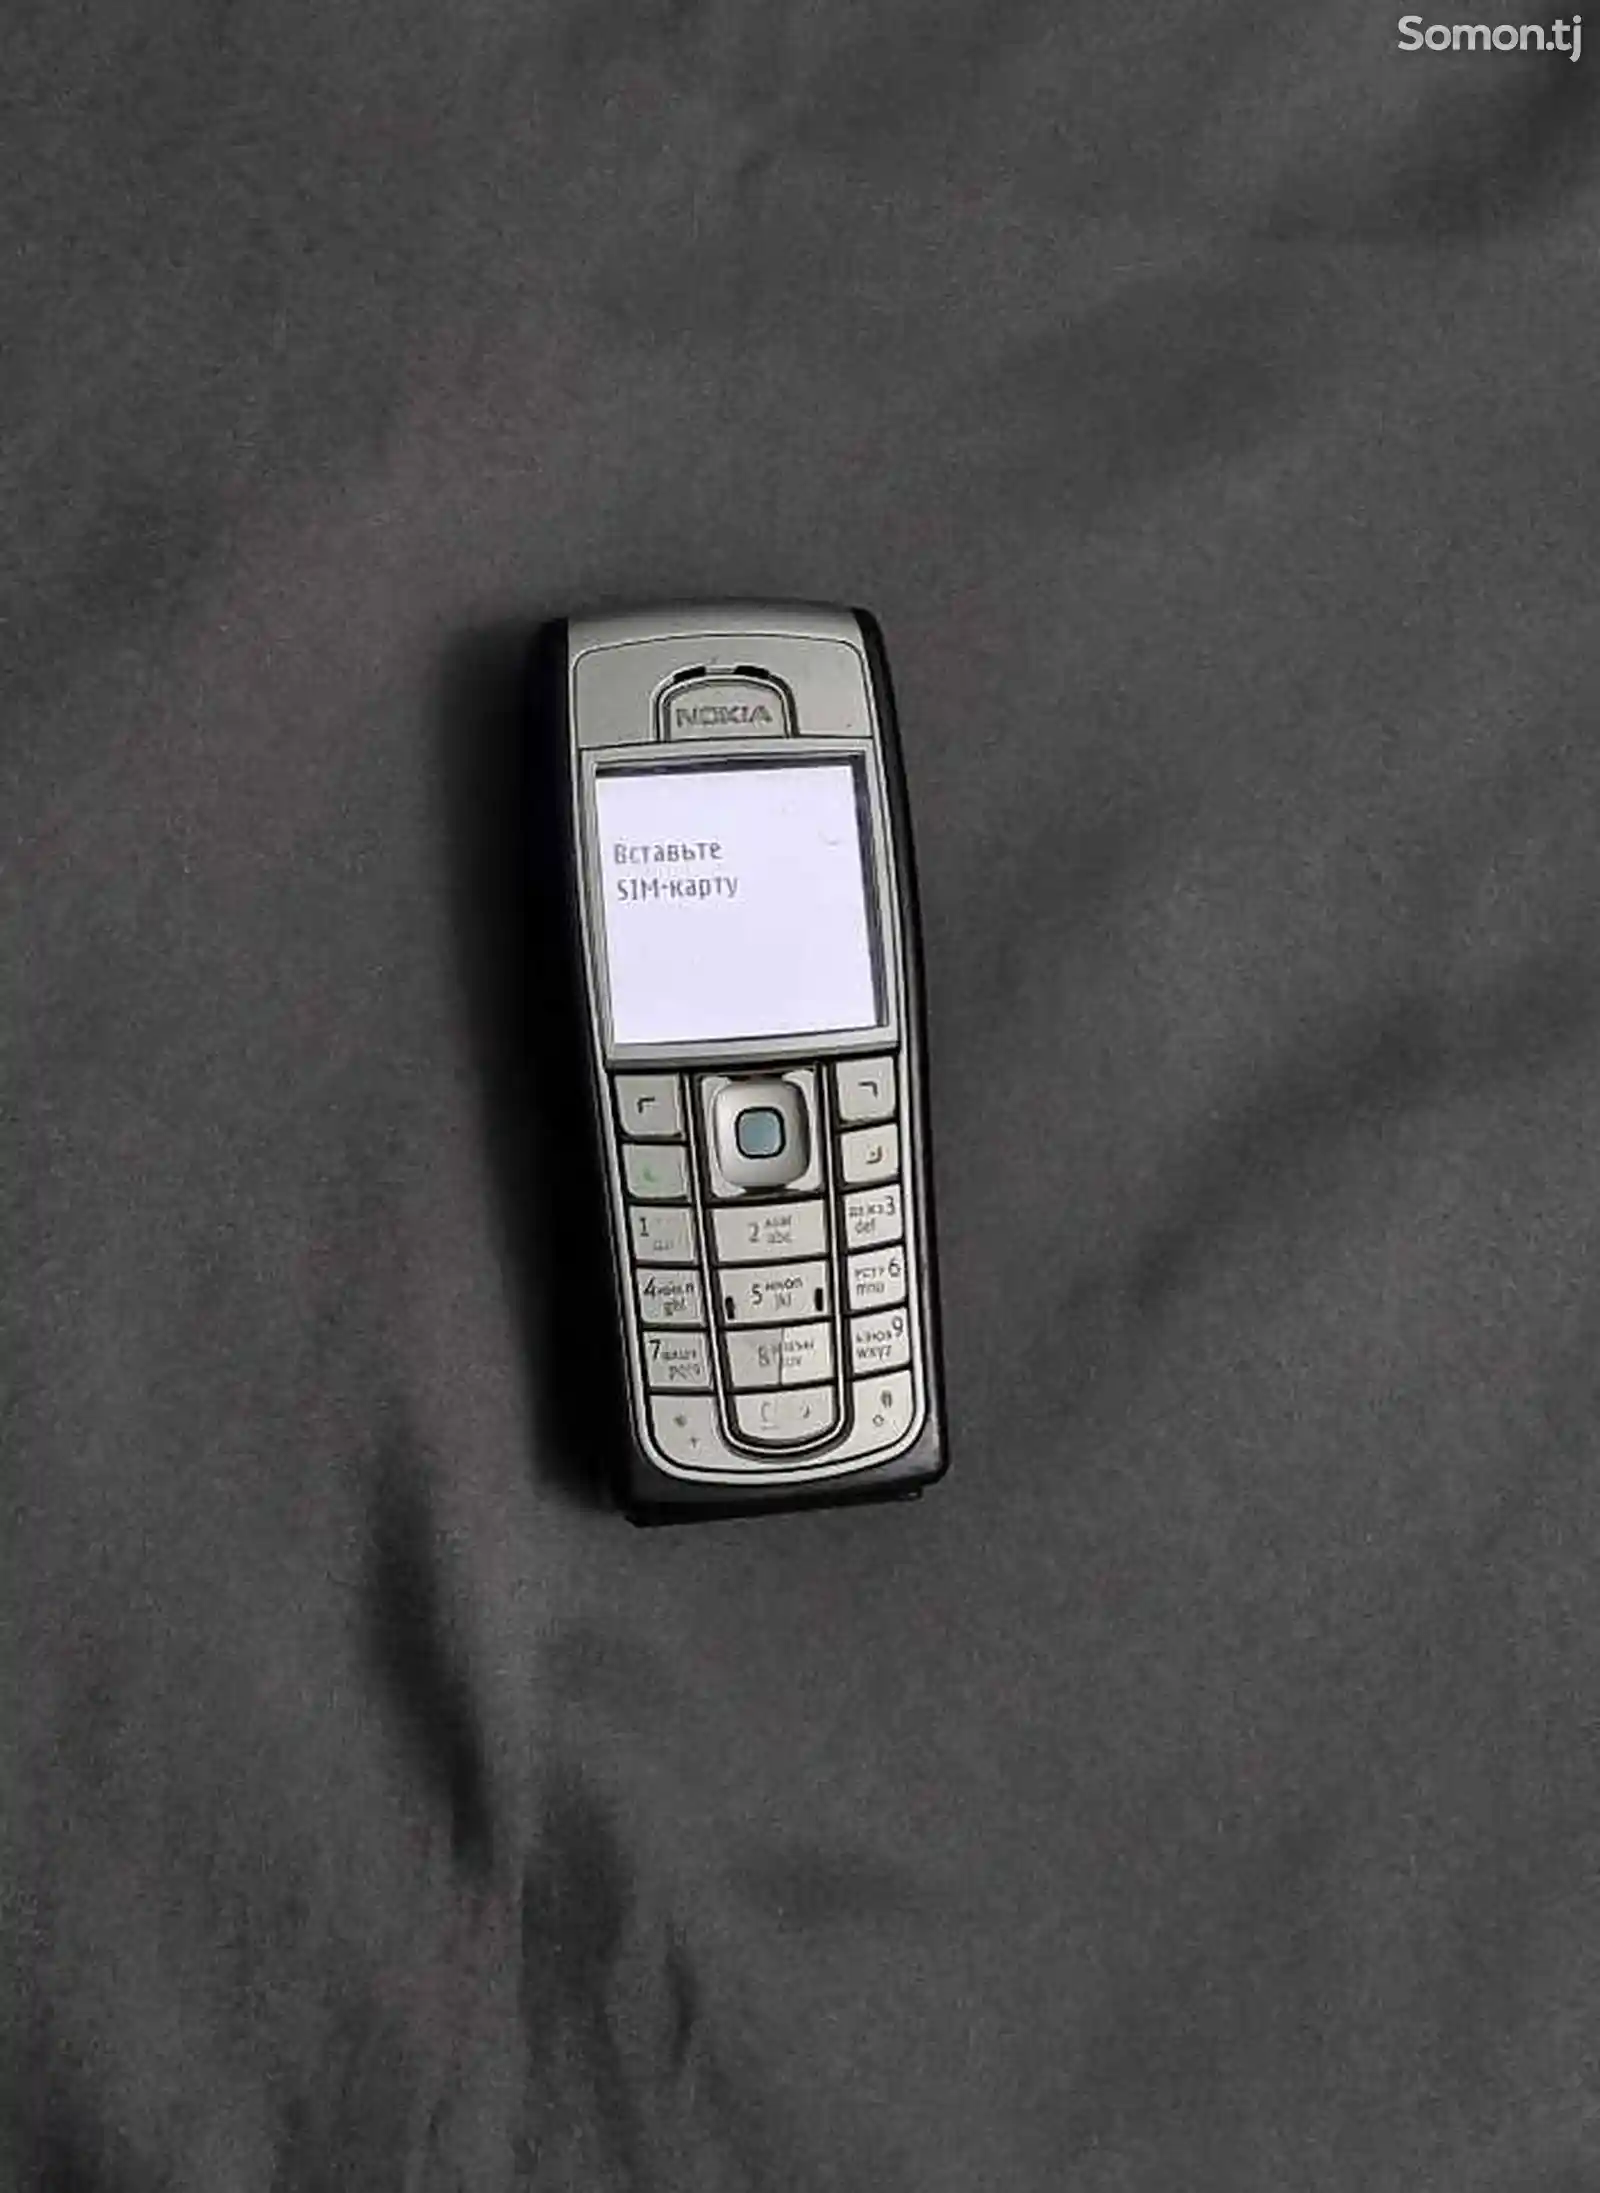 Nokia 6230i-1